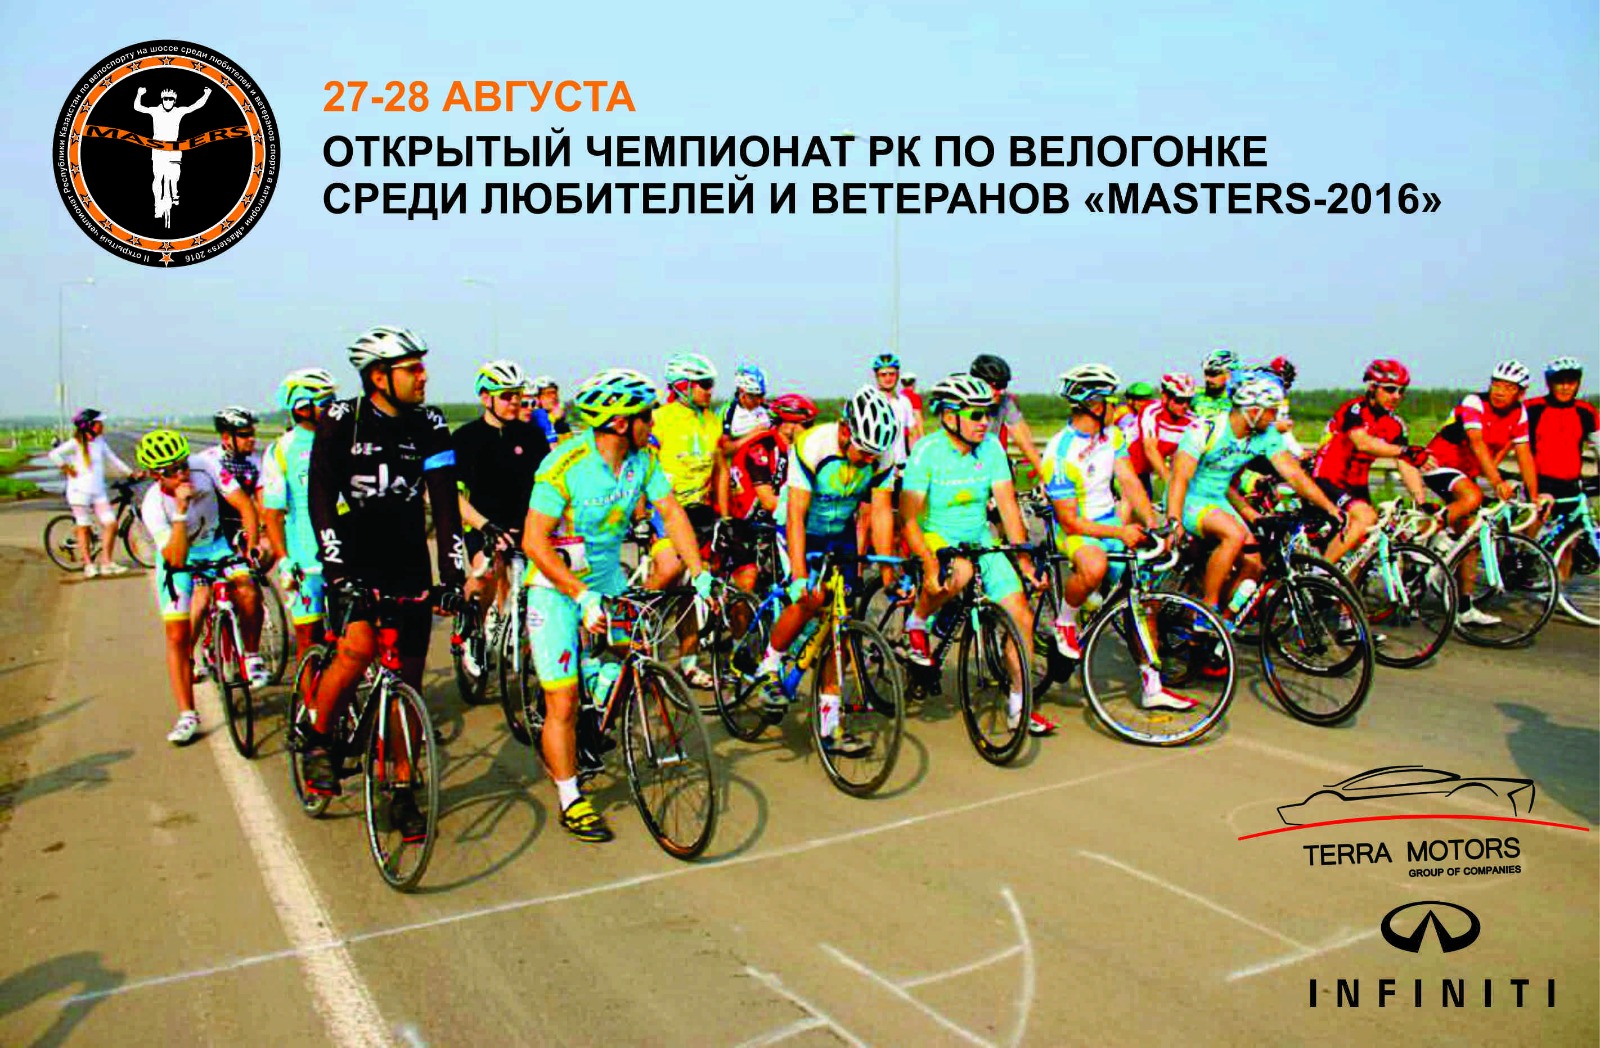 Открытый Чемпионат Казахстана в категории «MASTERS» на шоссе среди любителей и ветеранов